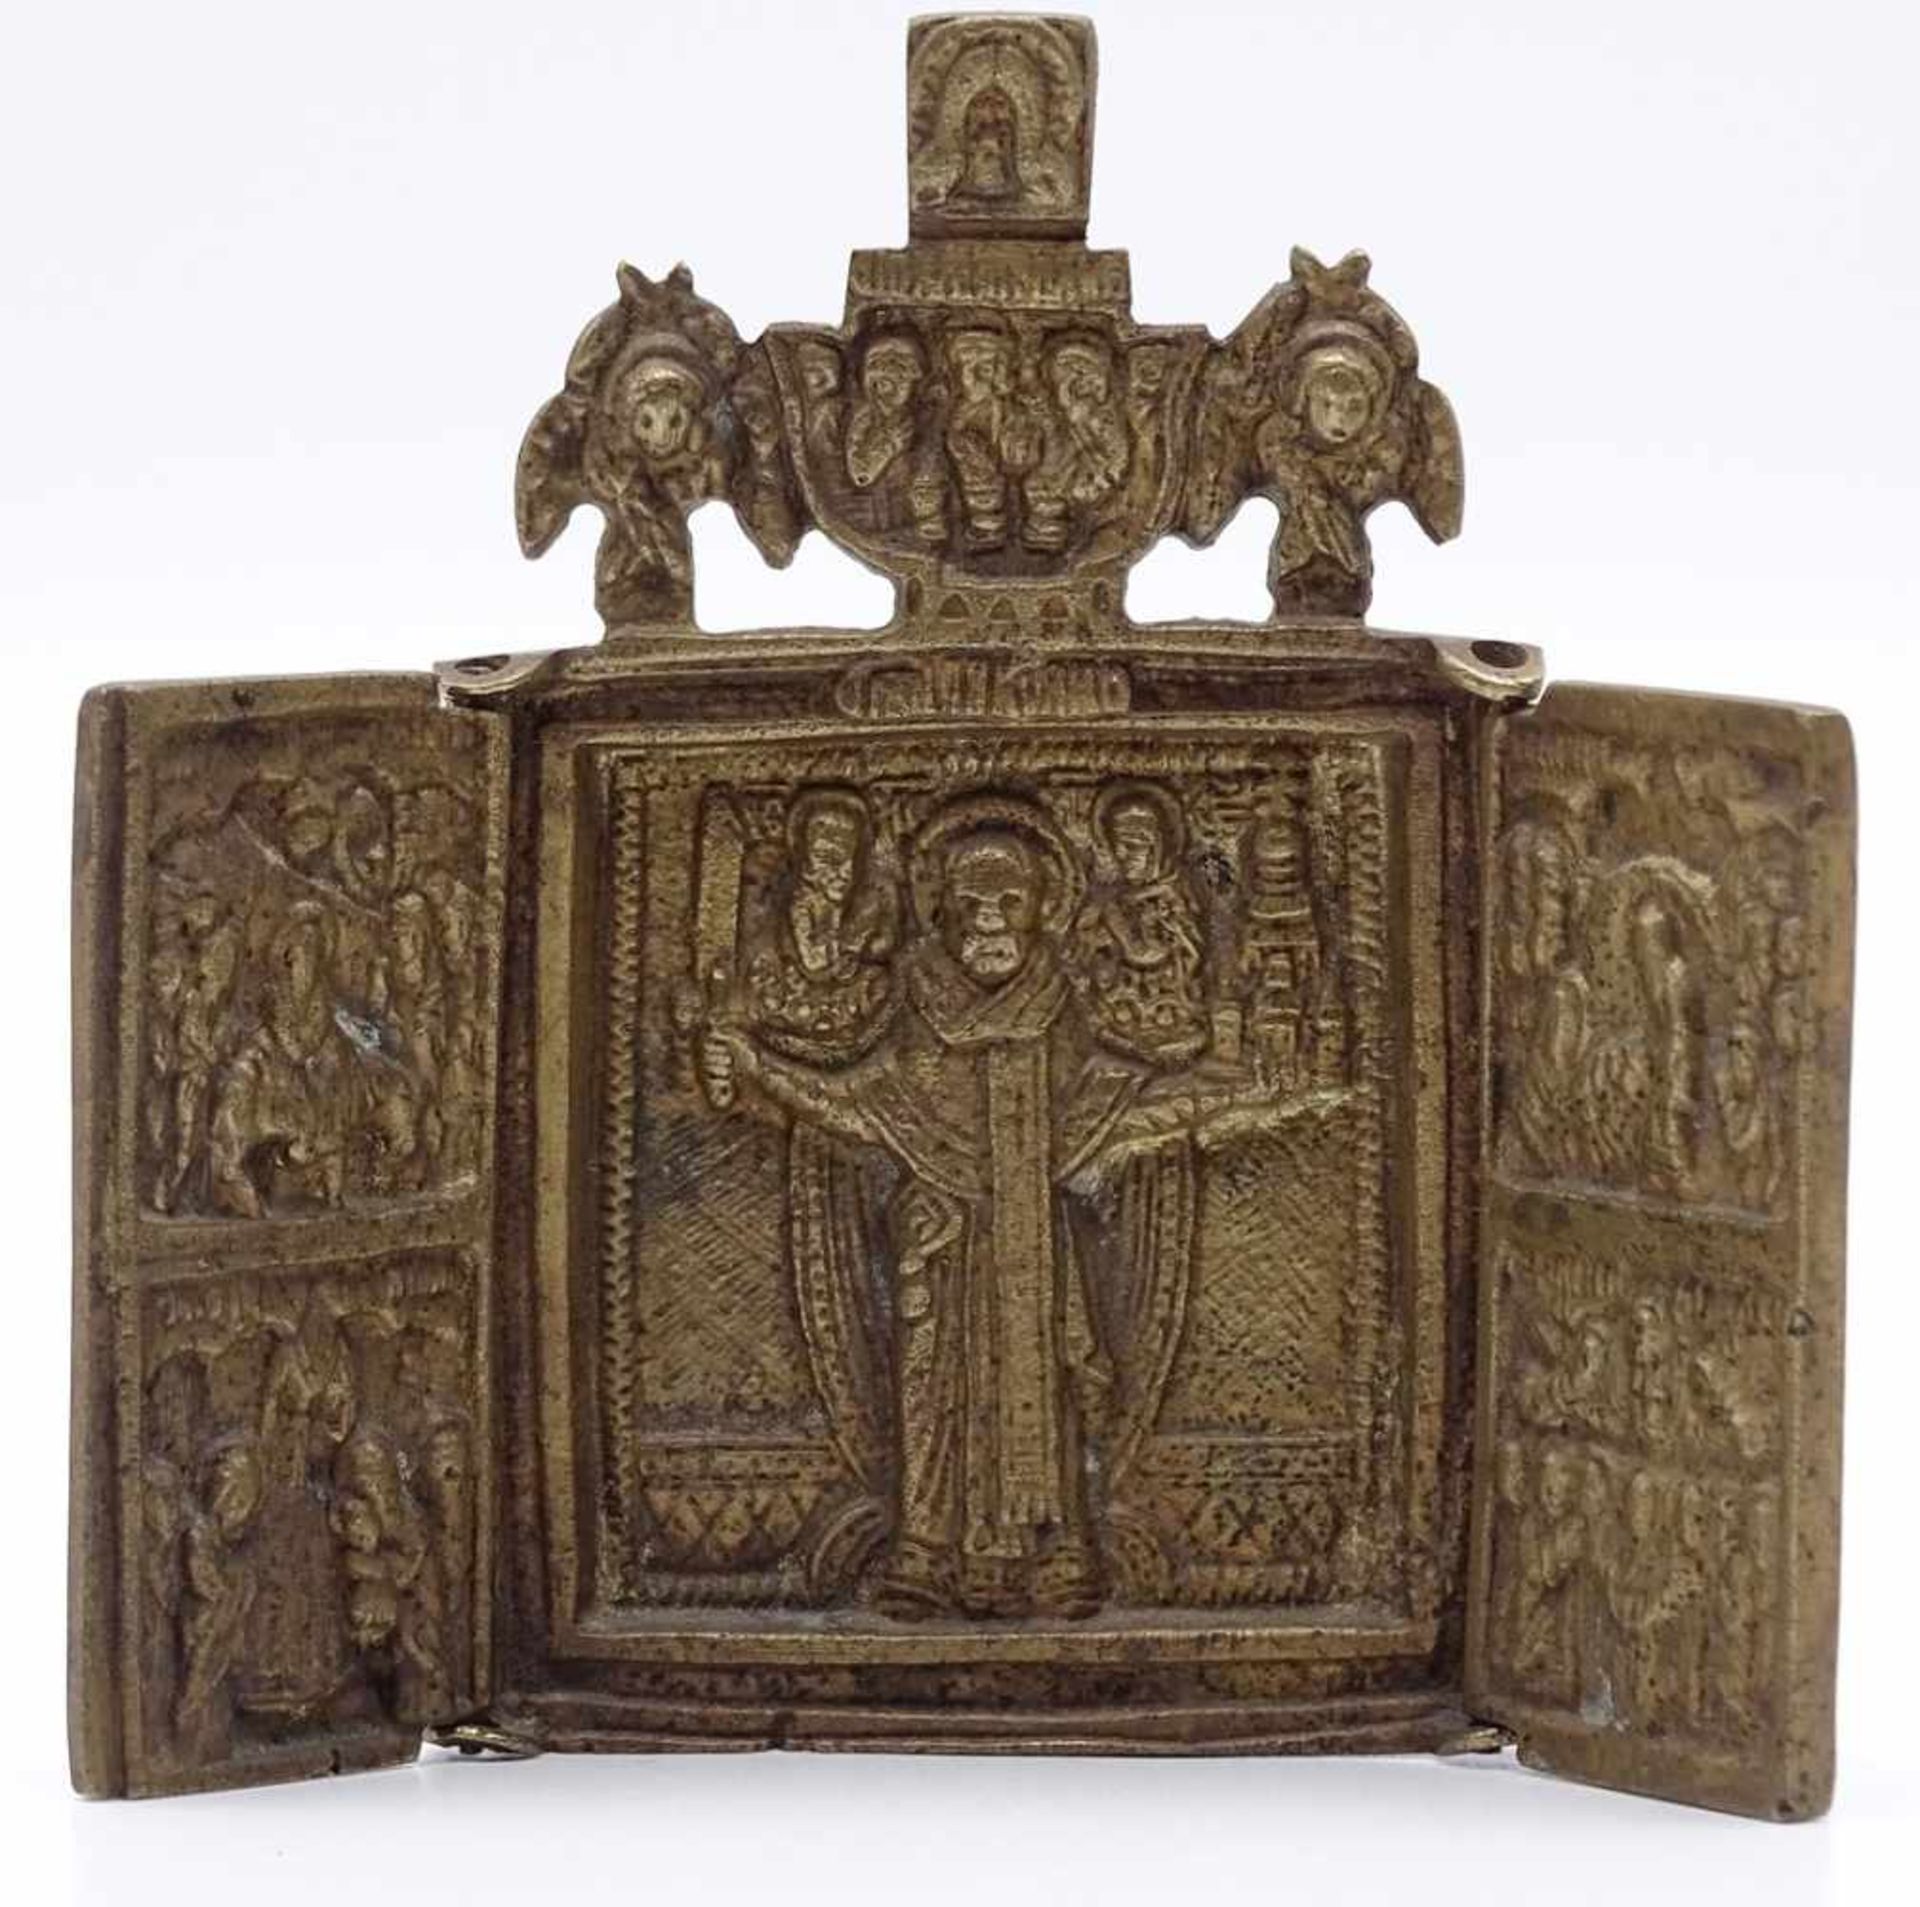 Reiseikone, 19. Jh.Russland, Bronze, 3-teilig, Inschriften, mit Darstellungen von orthodoxen